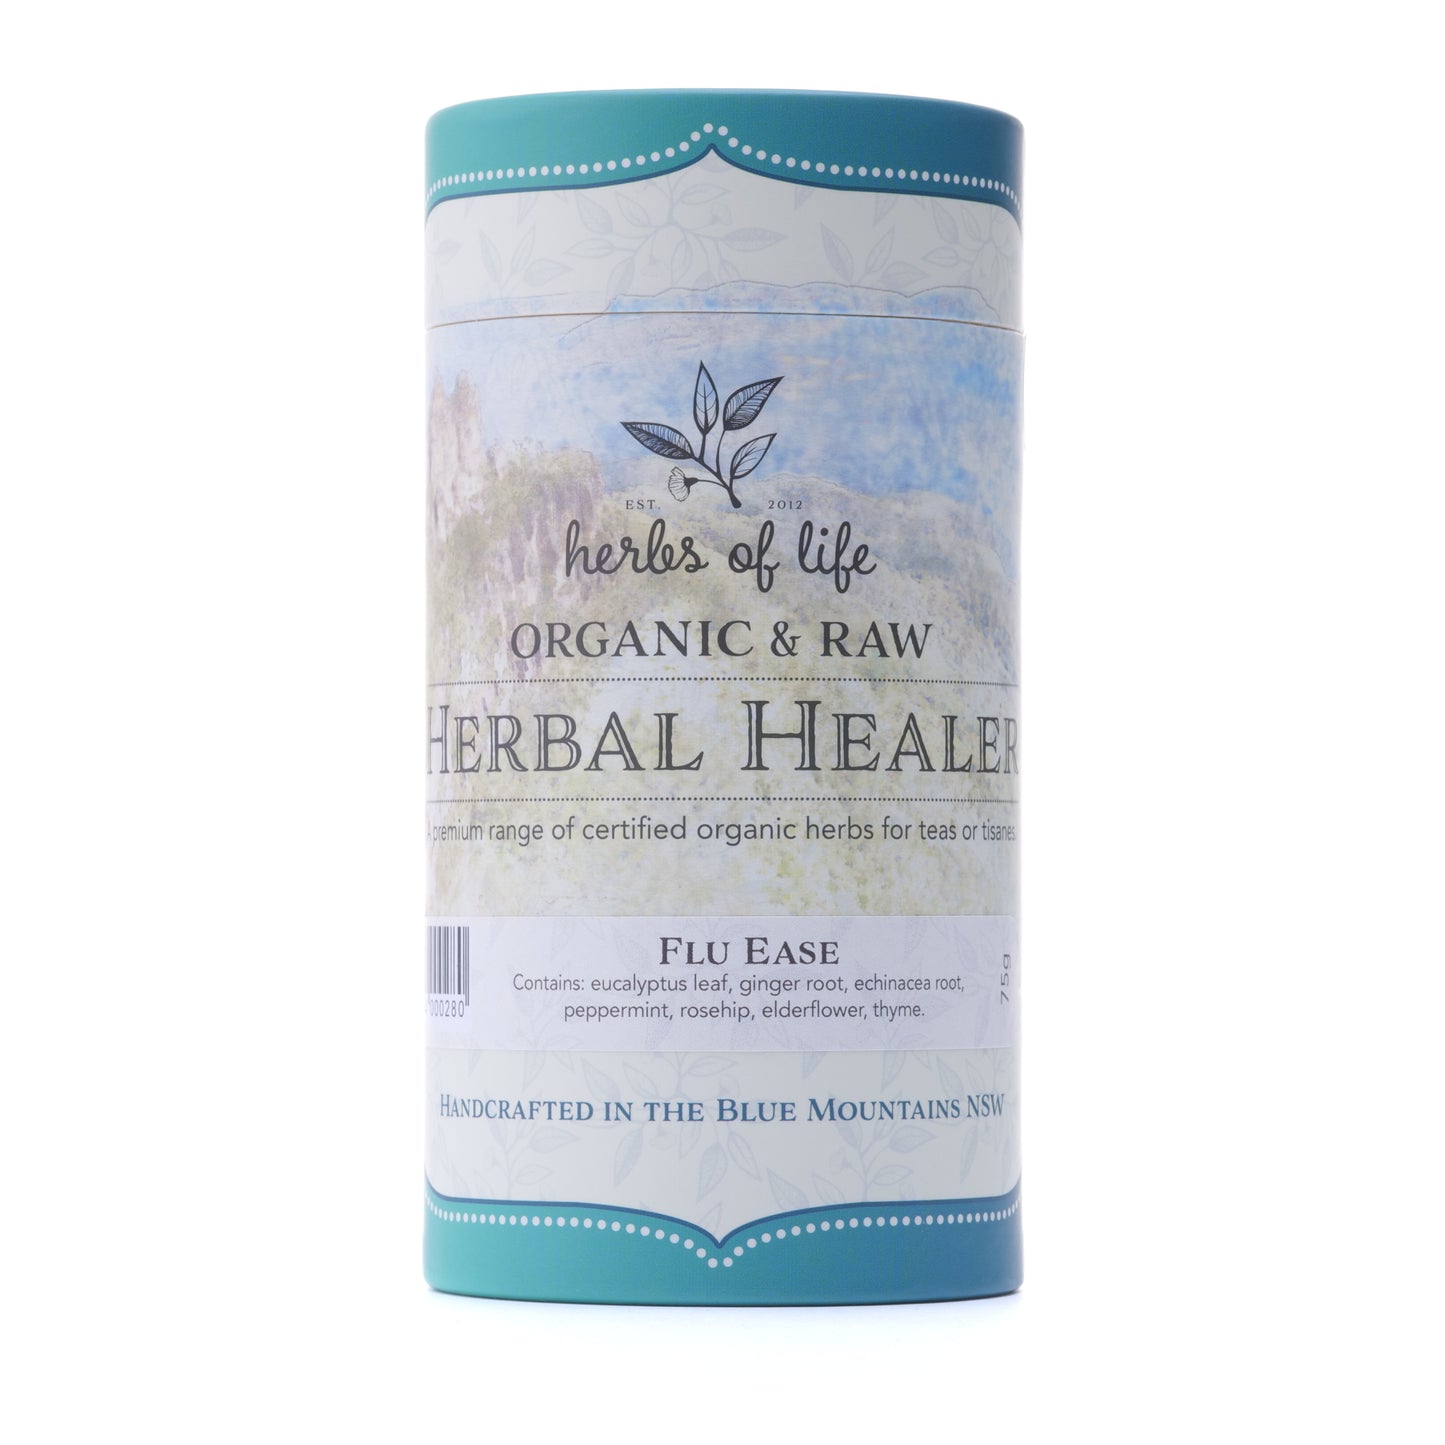 Herbal Healer - Flu Ease